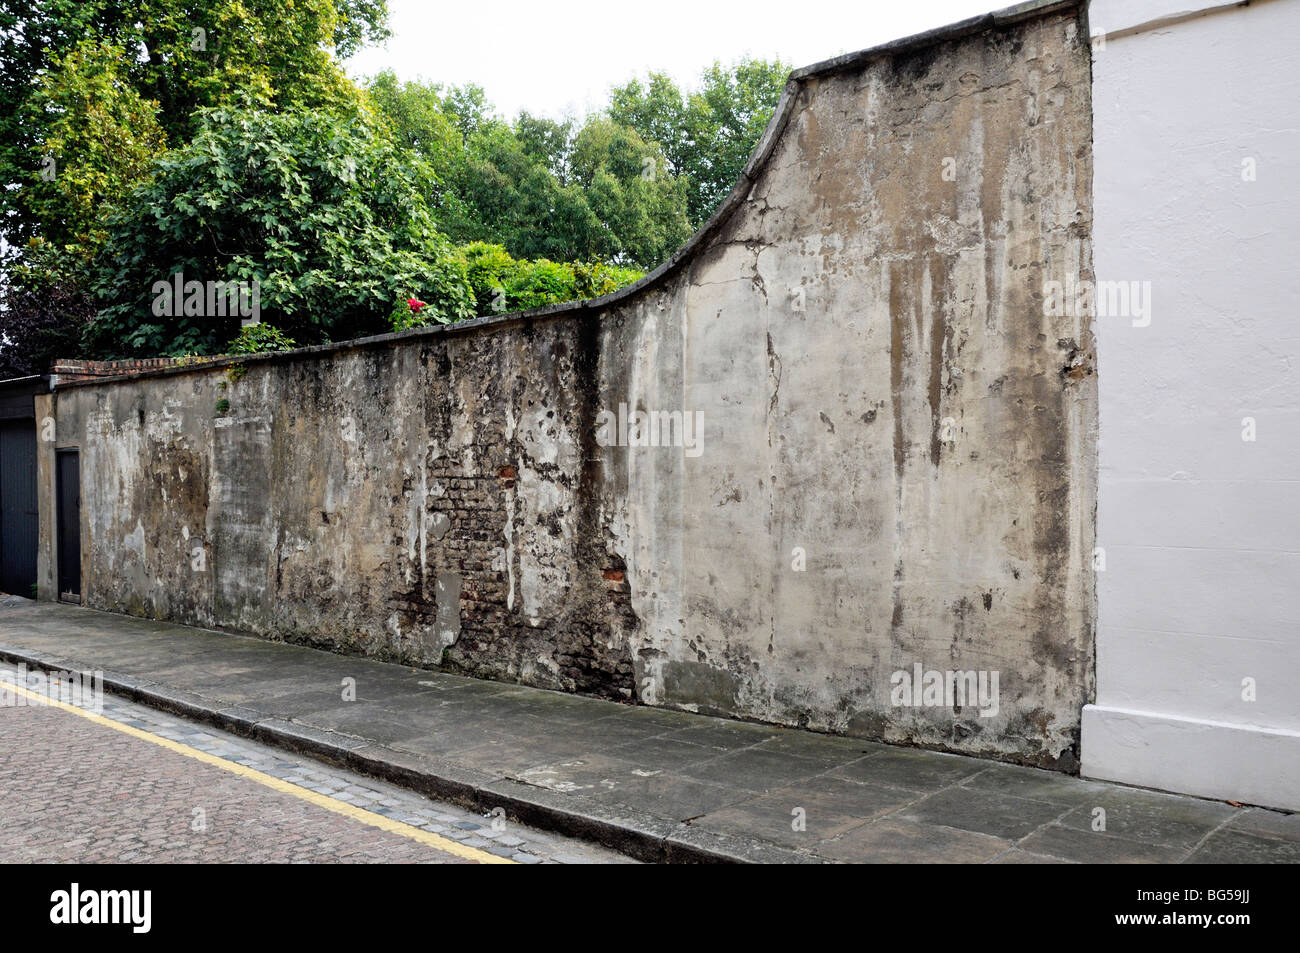 Vieille brique en détresse et rendus garden wall Limehouse East London England UK Banque D'Images